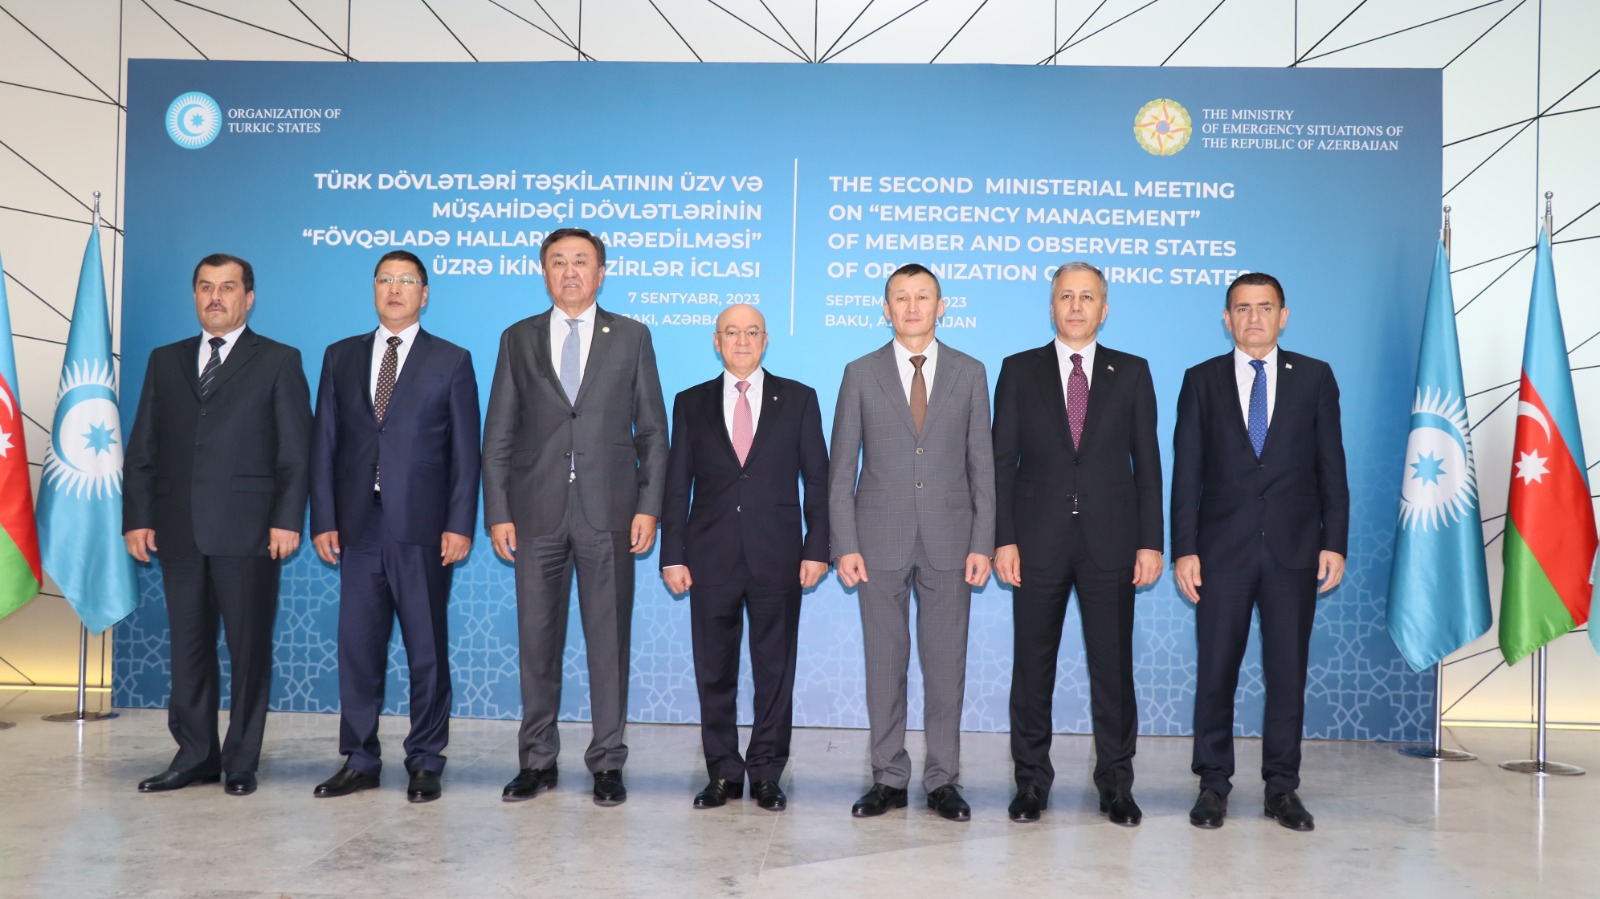 Делегация МЧС приняла участие во второй министерской встрече «Управление чрезвычайными ситуациями» Организации тюркских государств в Баку